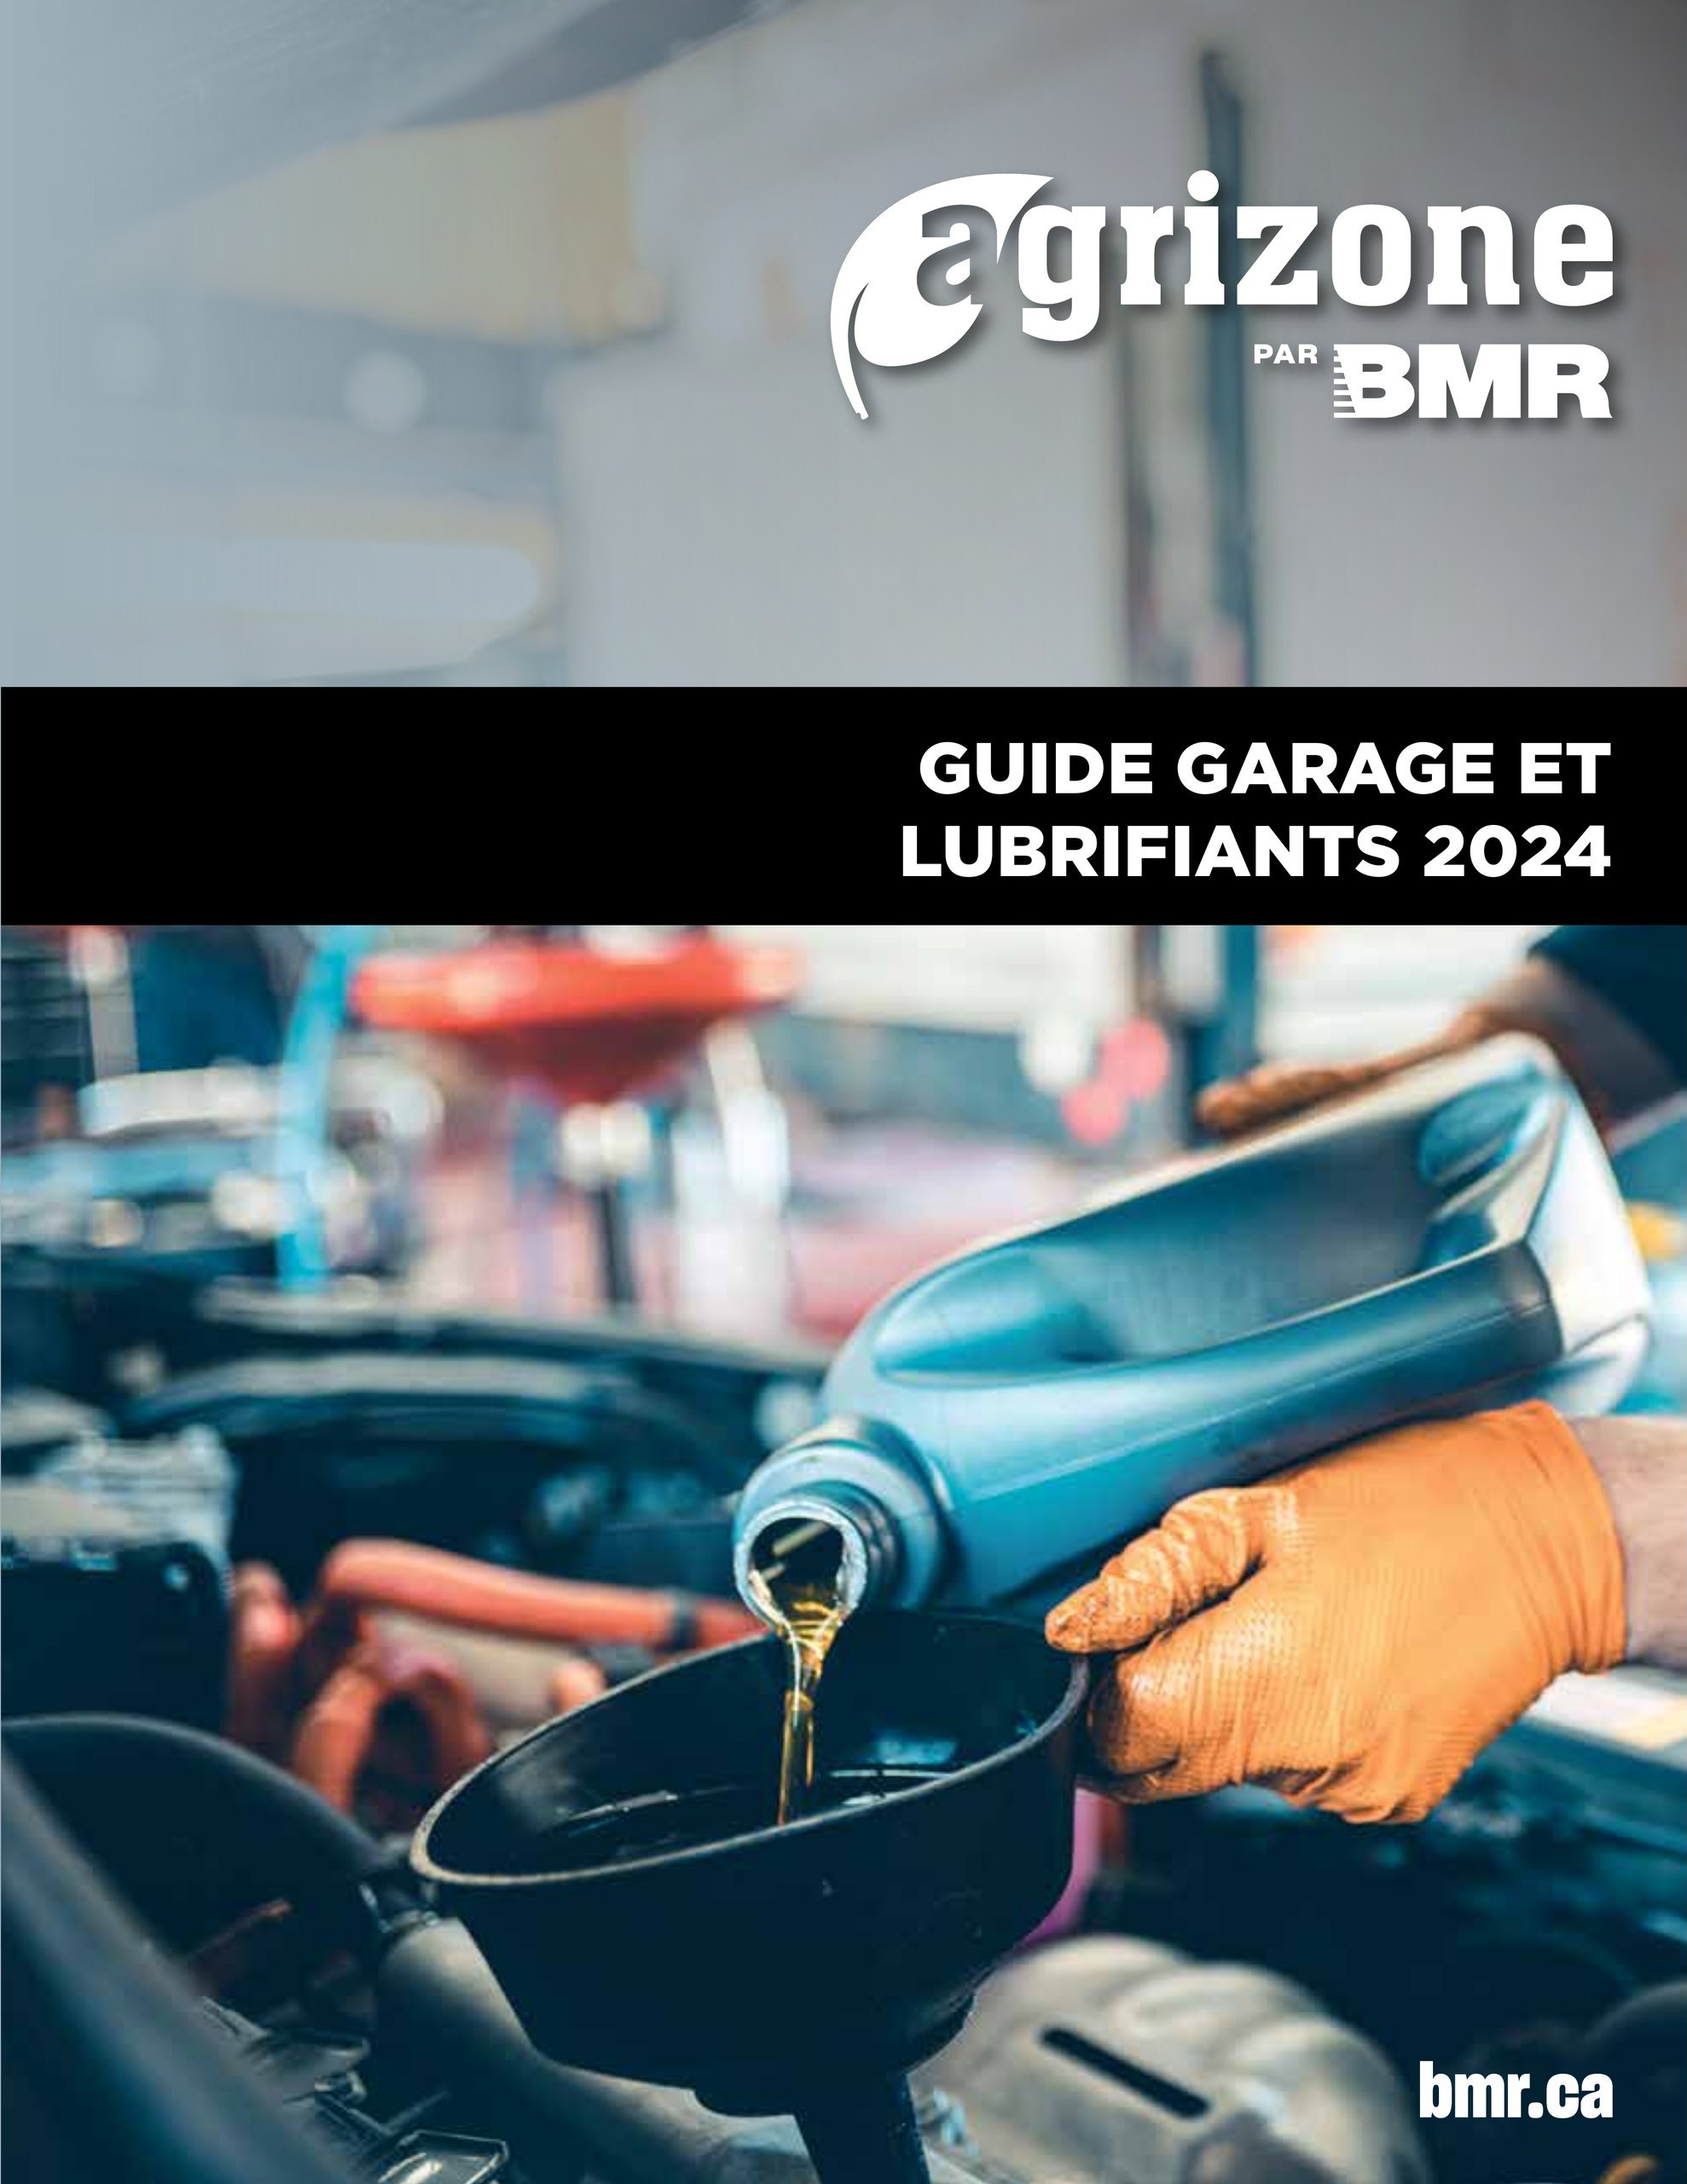 Circulaire BMR - Guide Garage et Lubrifiants 2024 - Page 1